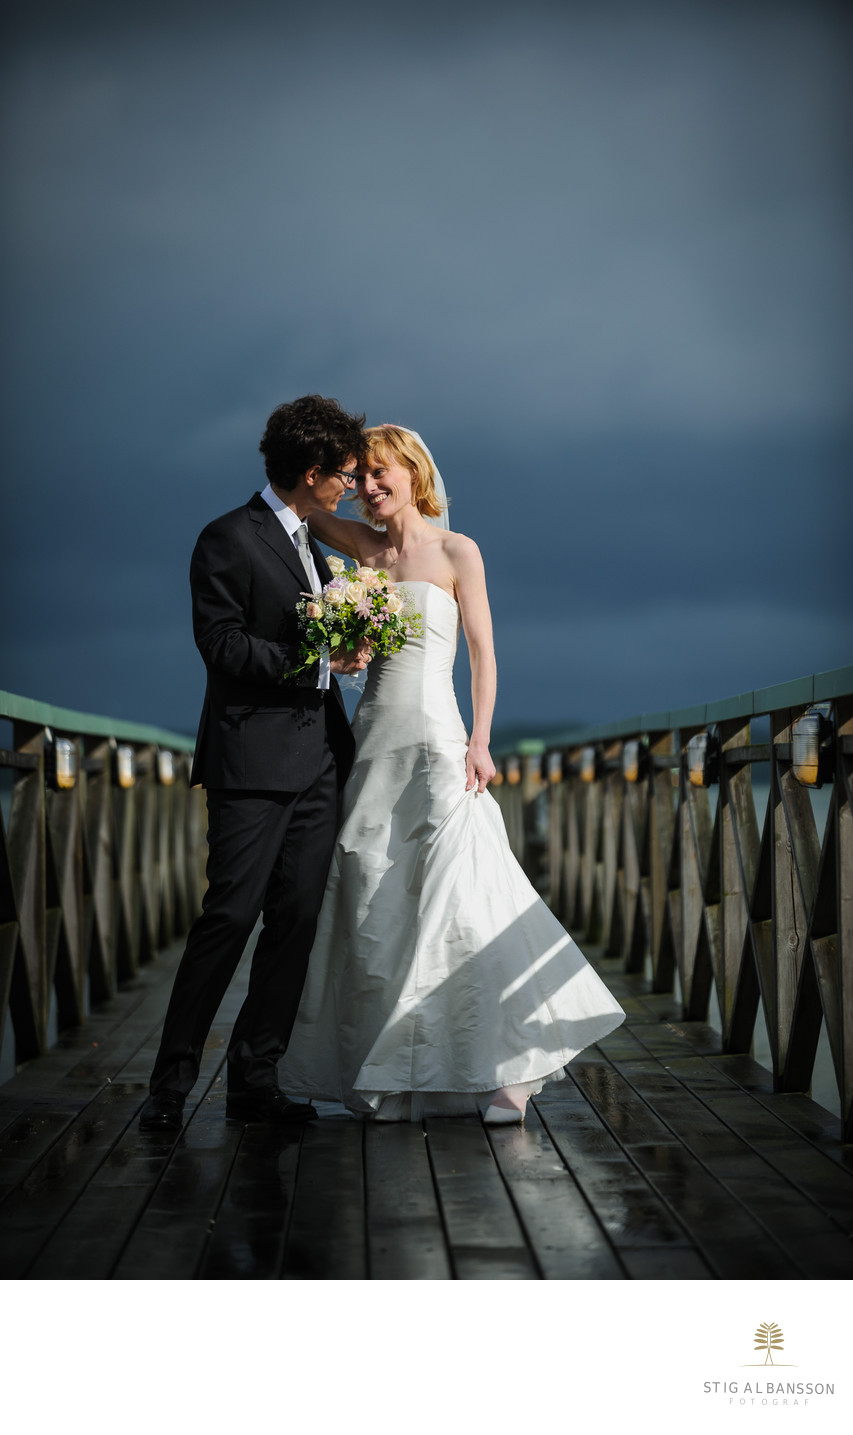 Dramatiskt ljus när brudparet fotograferas på bryggan